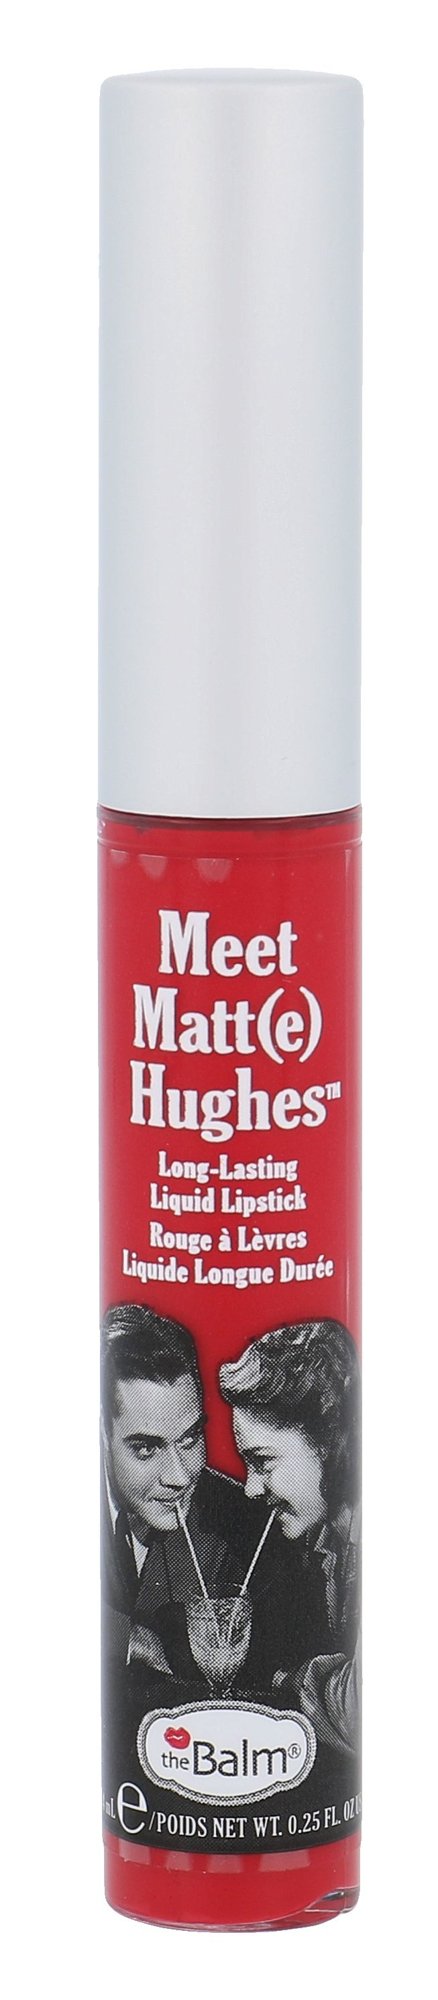 TheBalm Meet Matt(e) Hughes 7,4ml lūpdažis